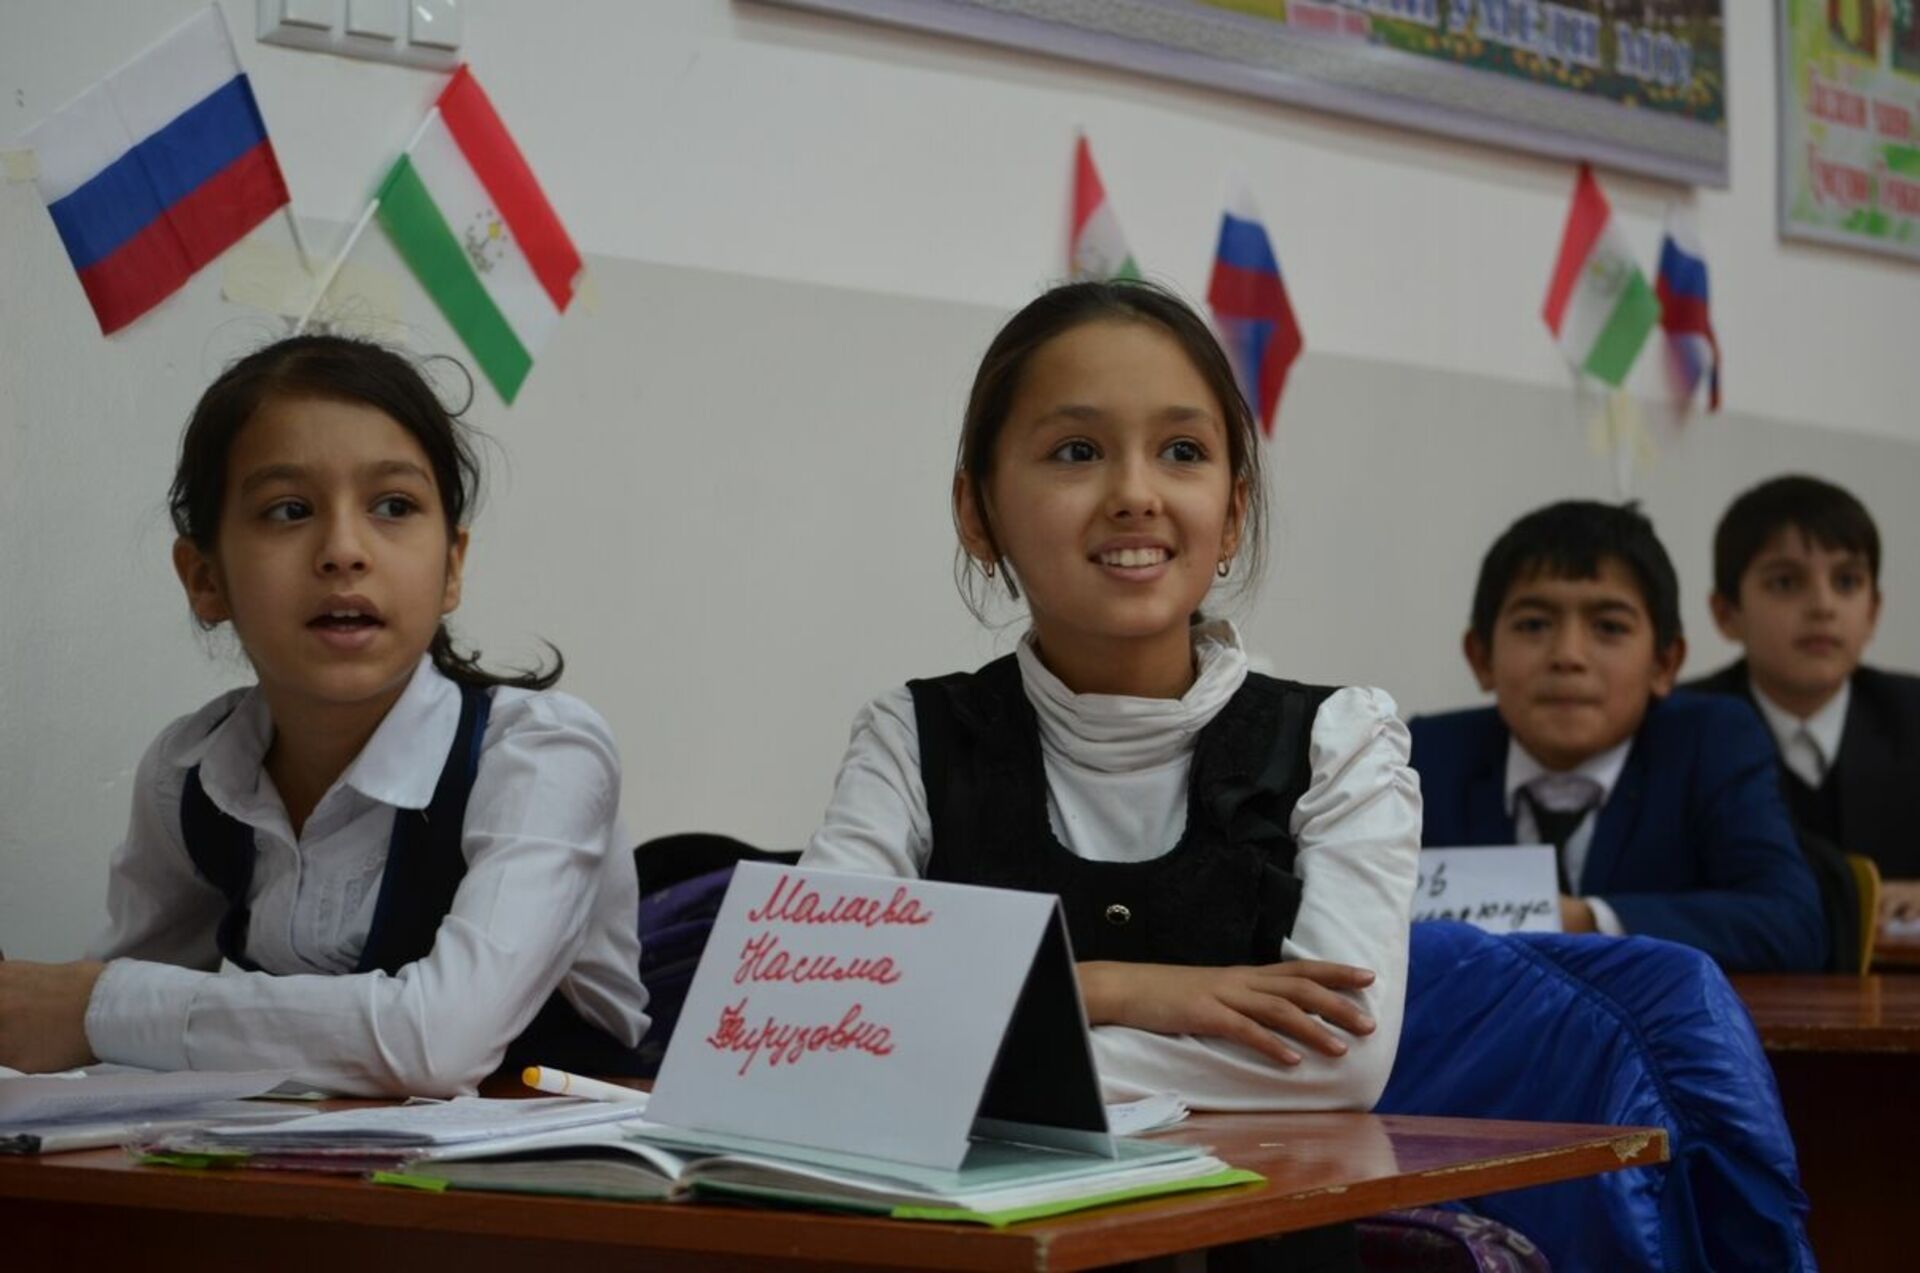 Обучение таджикскому. Такжикская школа в Таджикистане. Русскоязычные школы в Таджикистане. Русско таджикские школы в Таджикистане. Русский язык в Таджикистане в школах.